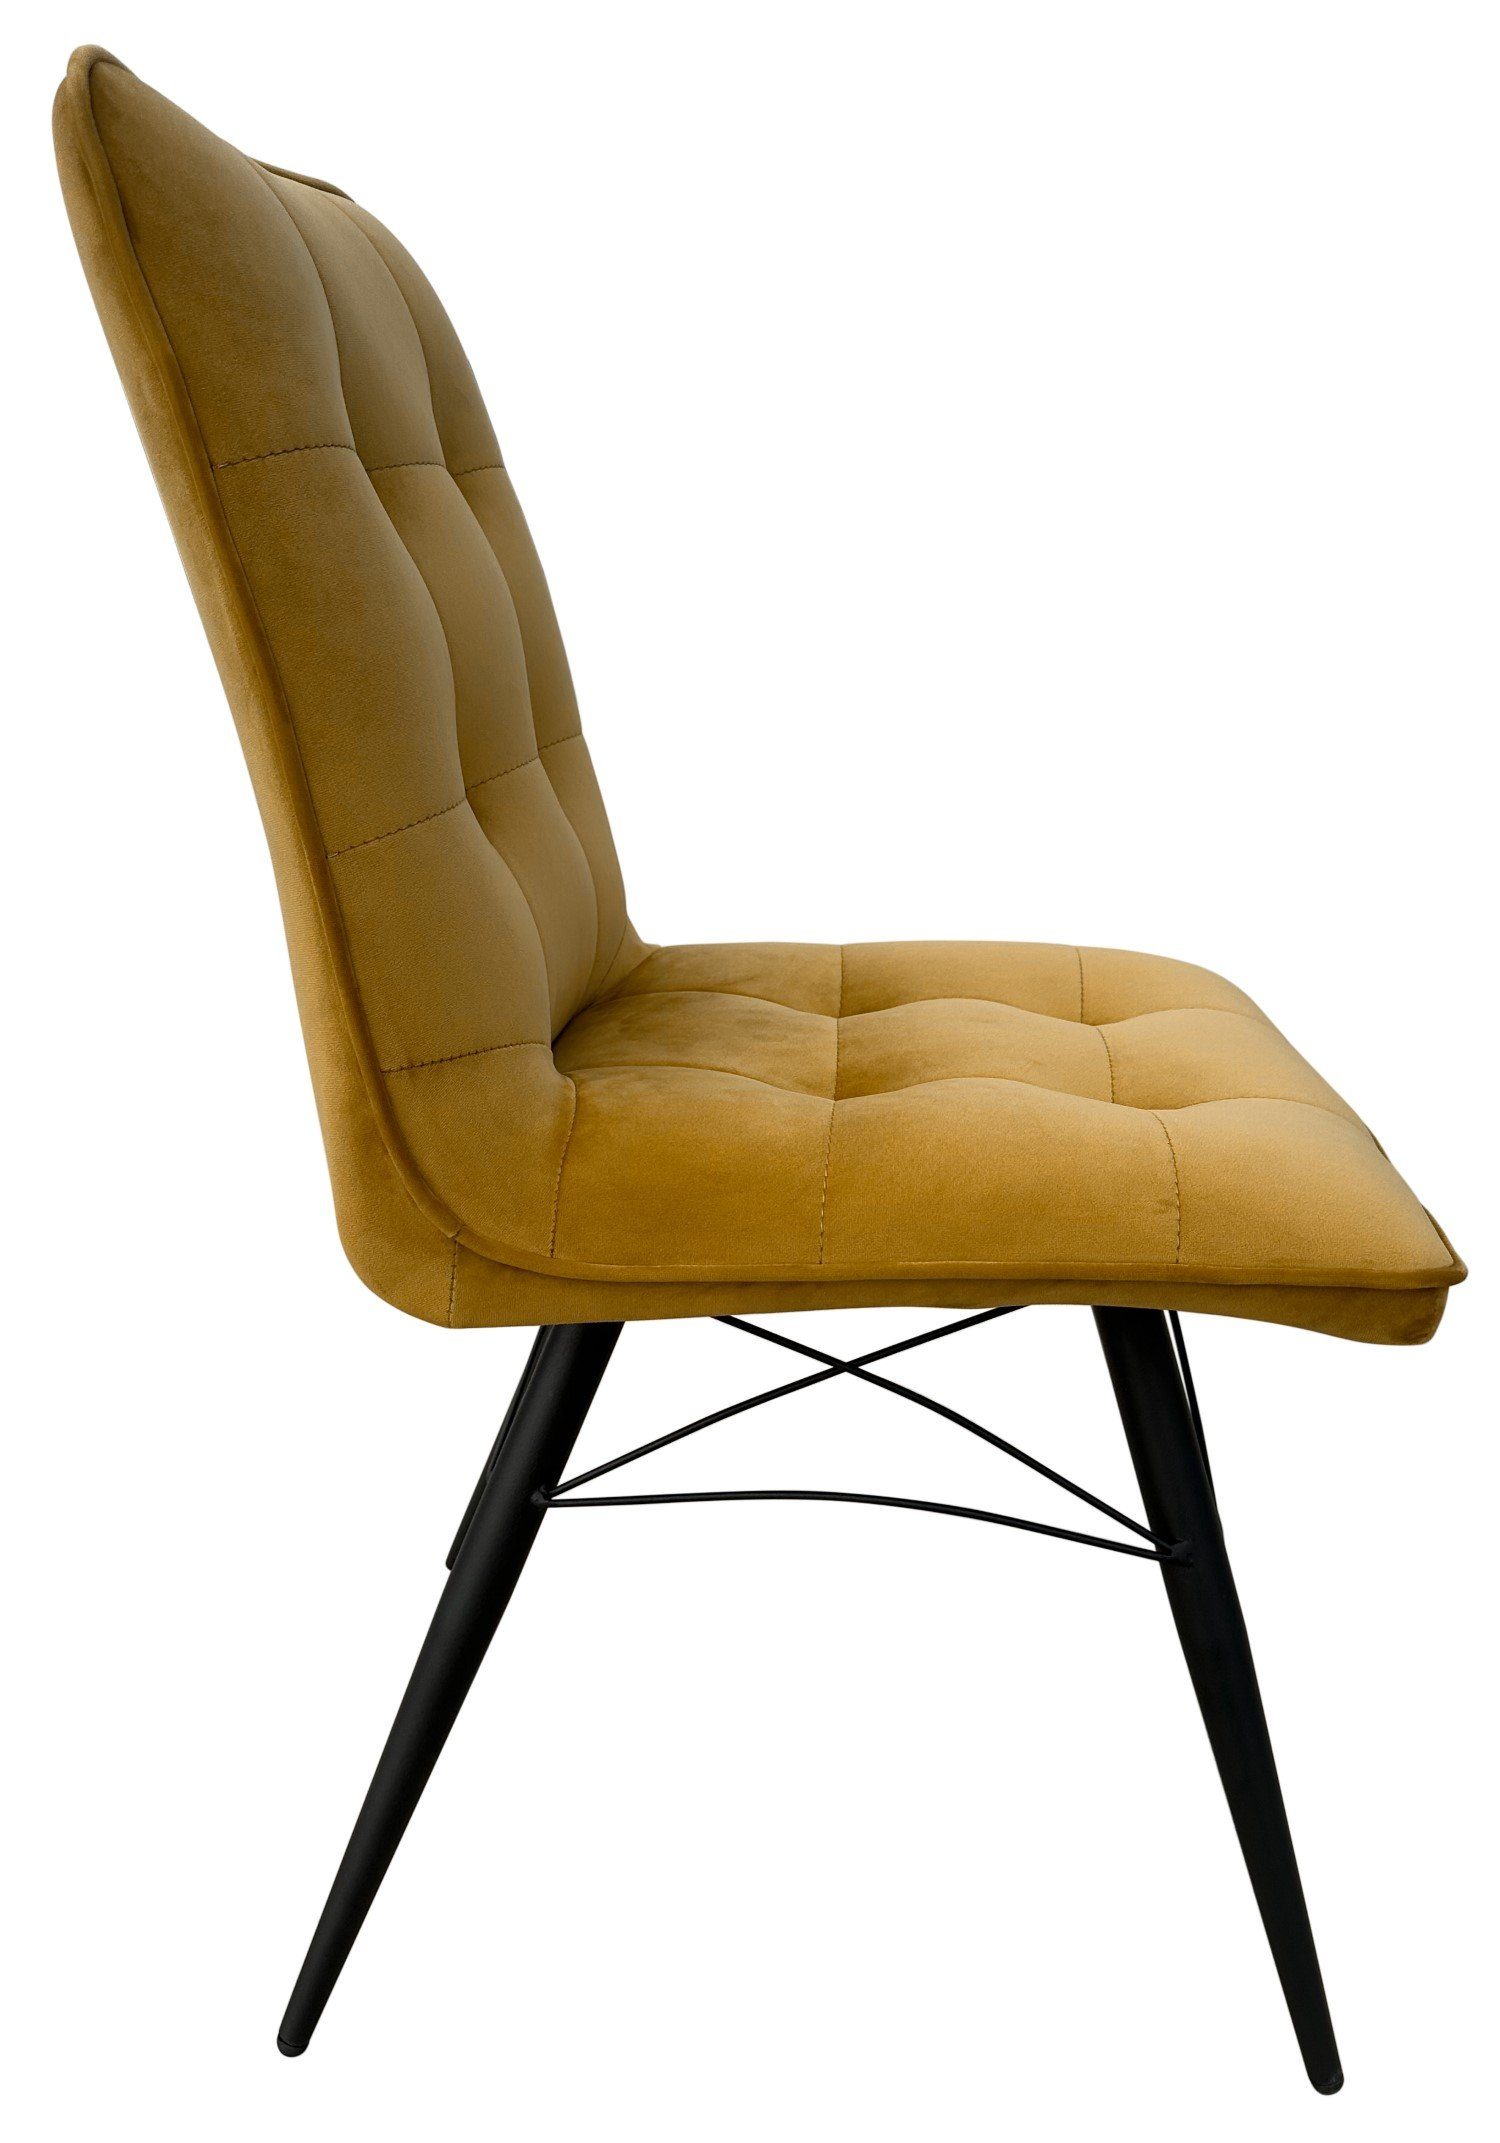 living - Samtbezug - - hohe Stuhl weicher Samt bene Vicenza saharagelb, - gepolstert - Metall-Gestell Rückenlehne